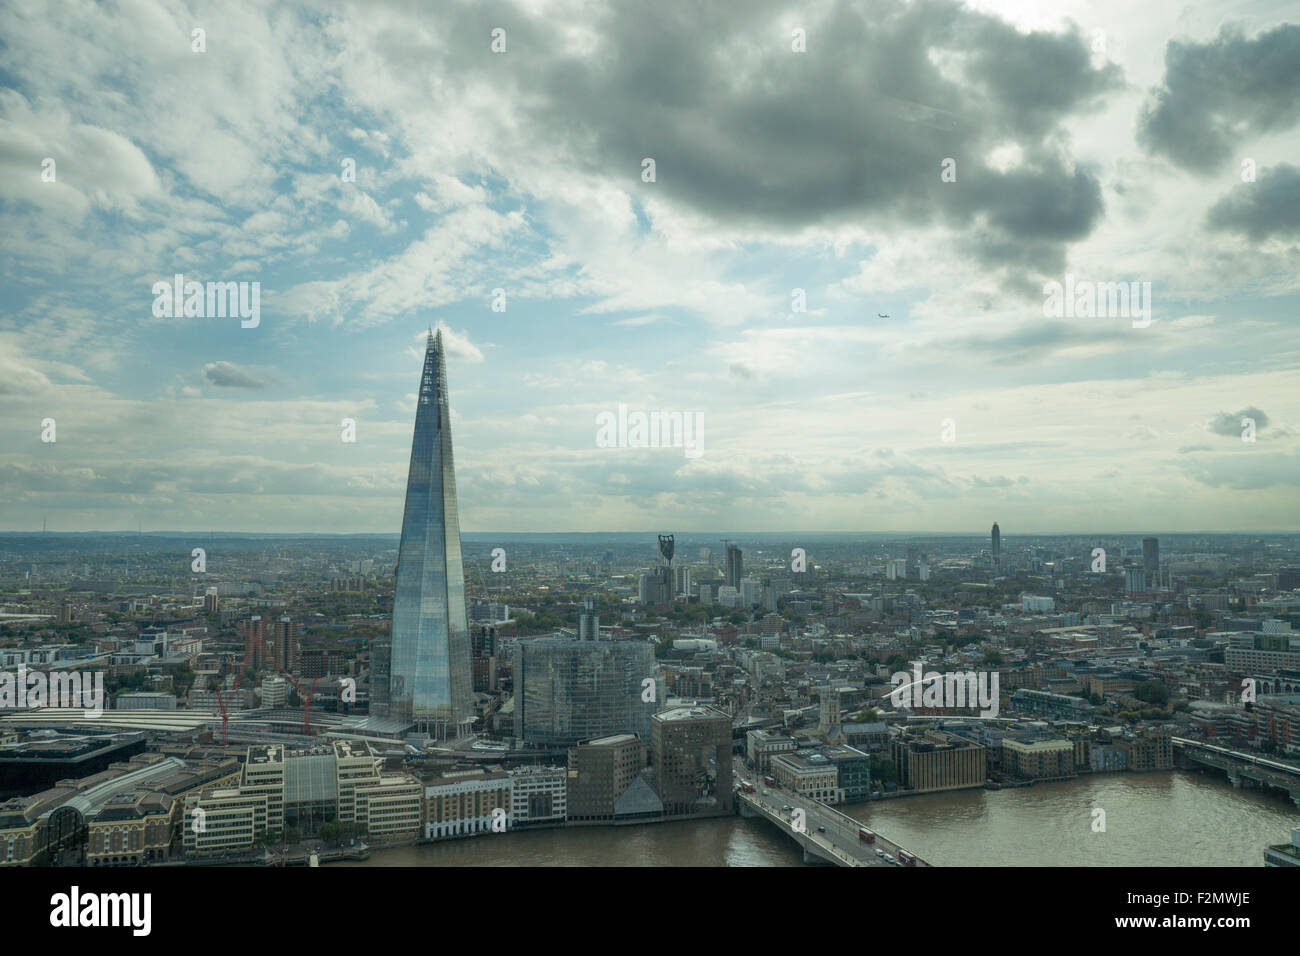 Ein Blick auf die Scherbe, London. Einen Blick auf London, einen Blick auf London Southbank, Skygarden, Sky Garden, 20 Fenchurch Street view Stockfoto